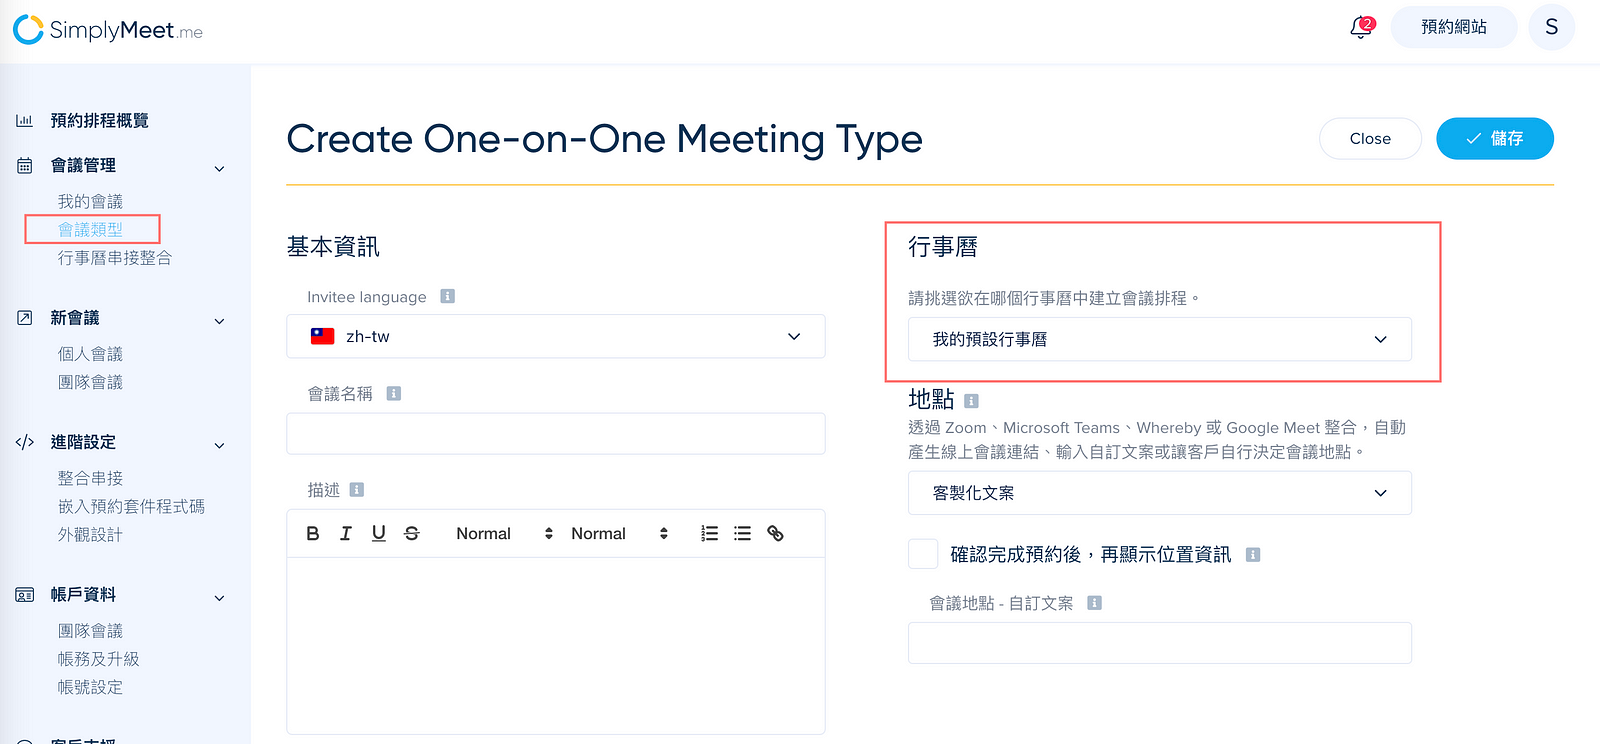 SimplyMeet.me 行事曆串接整合 — 即時同步預約空檔，輕鬆管理會議排程！